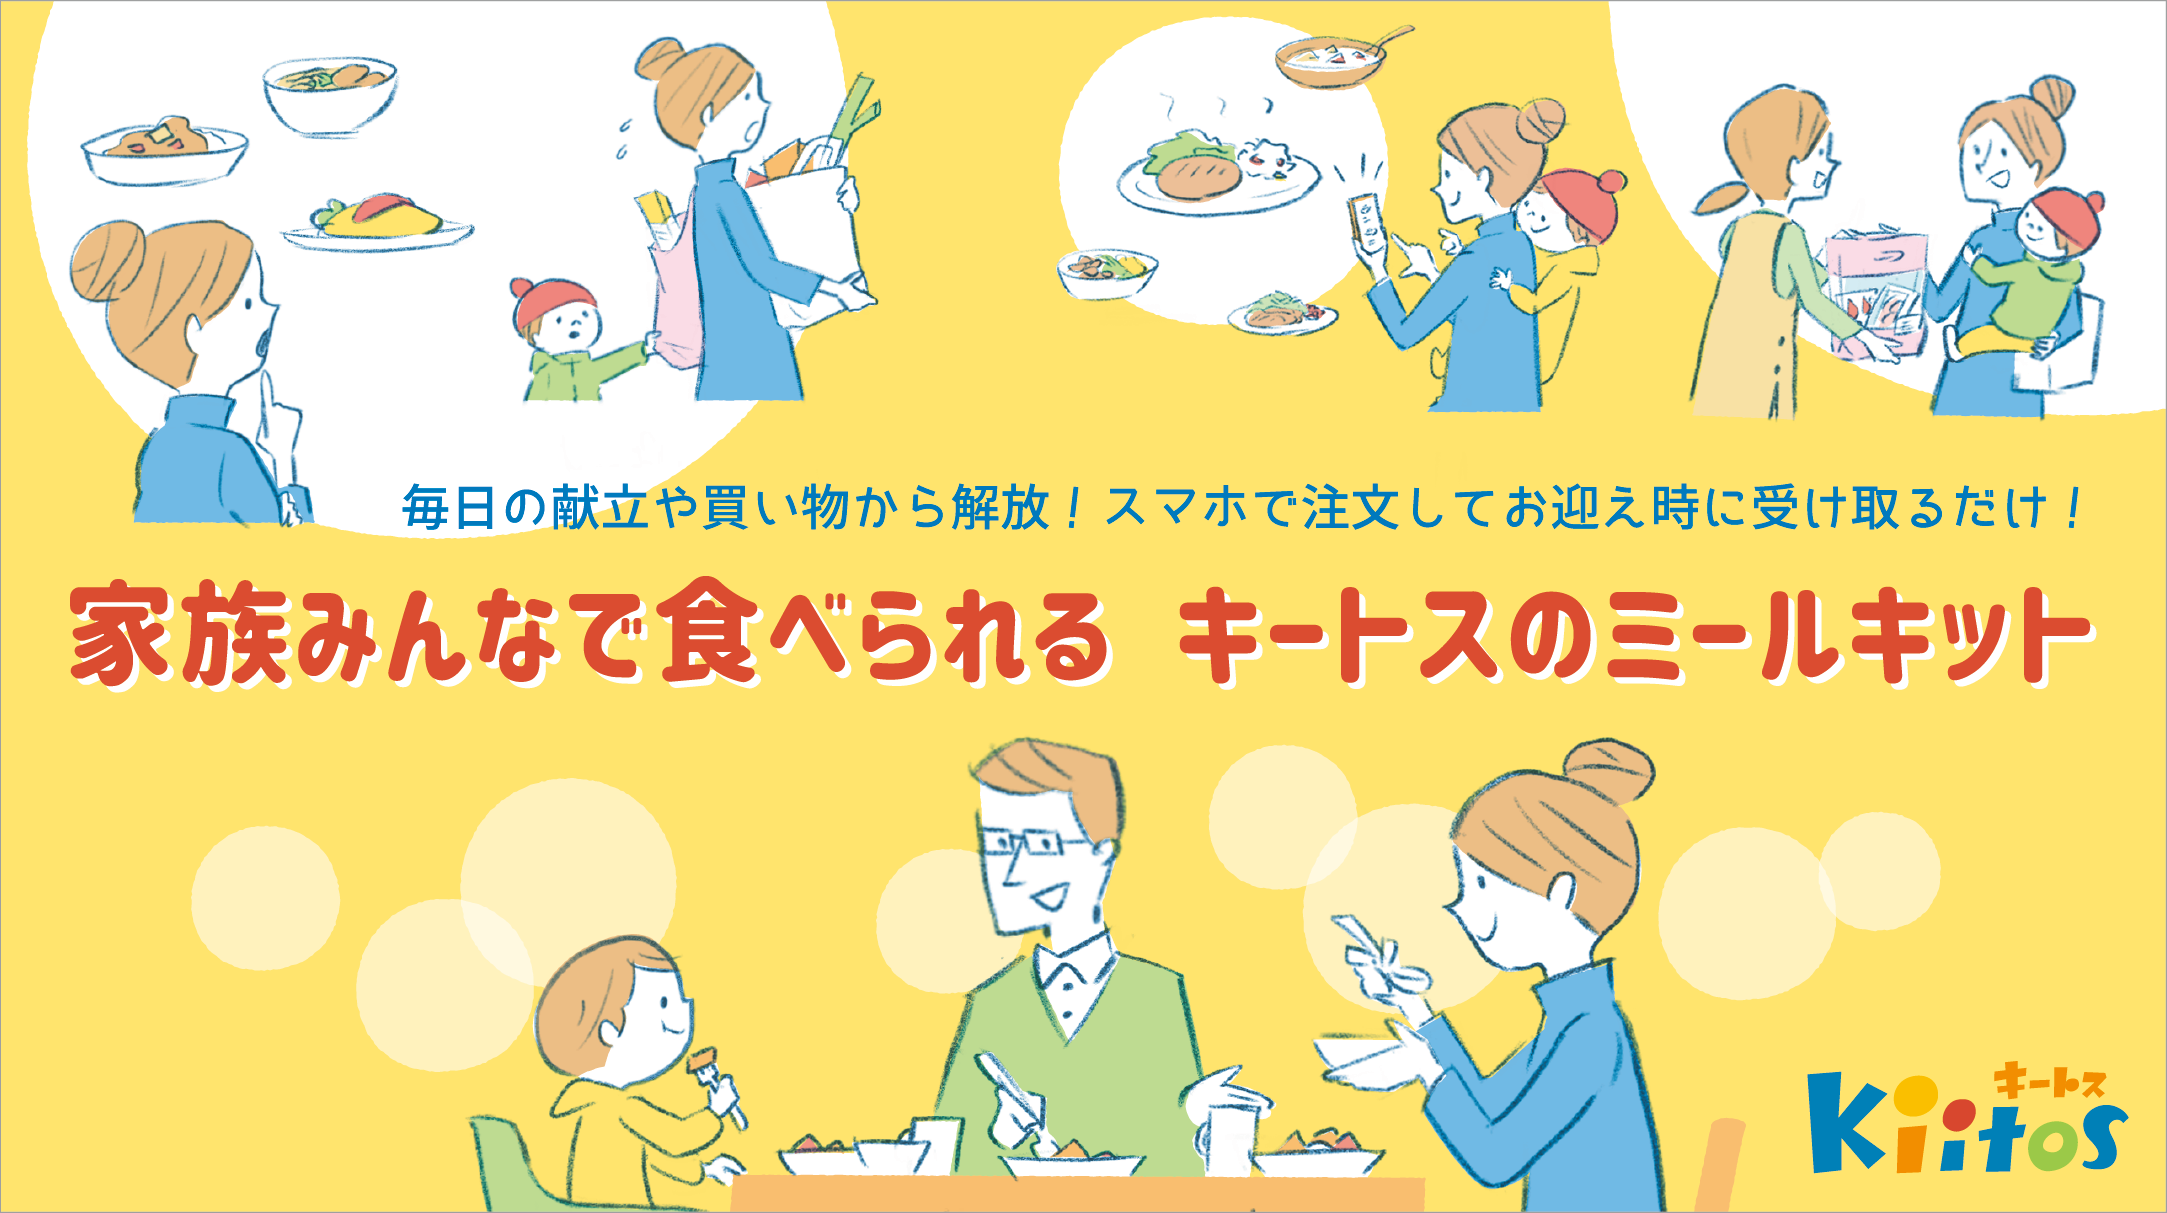 千葉県認可保育園「キートス」で
子どものお迎え時に購入できる「ミールキット」の提供を開始　
～子どもと家族が向き合う時間を増やす～